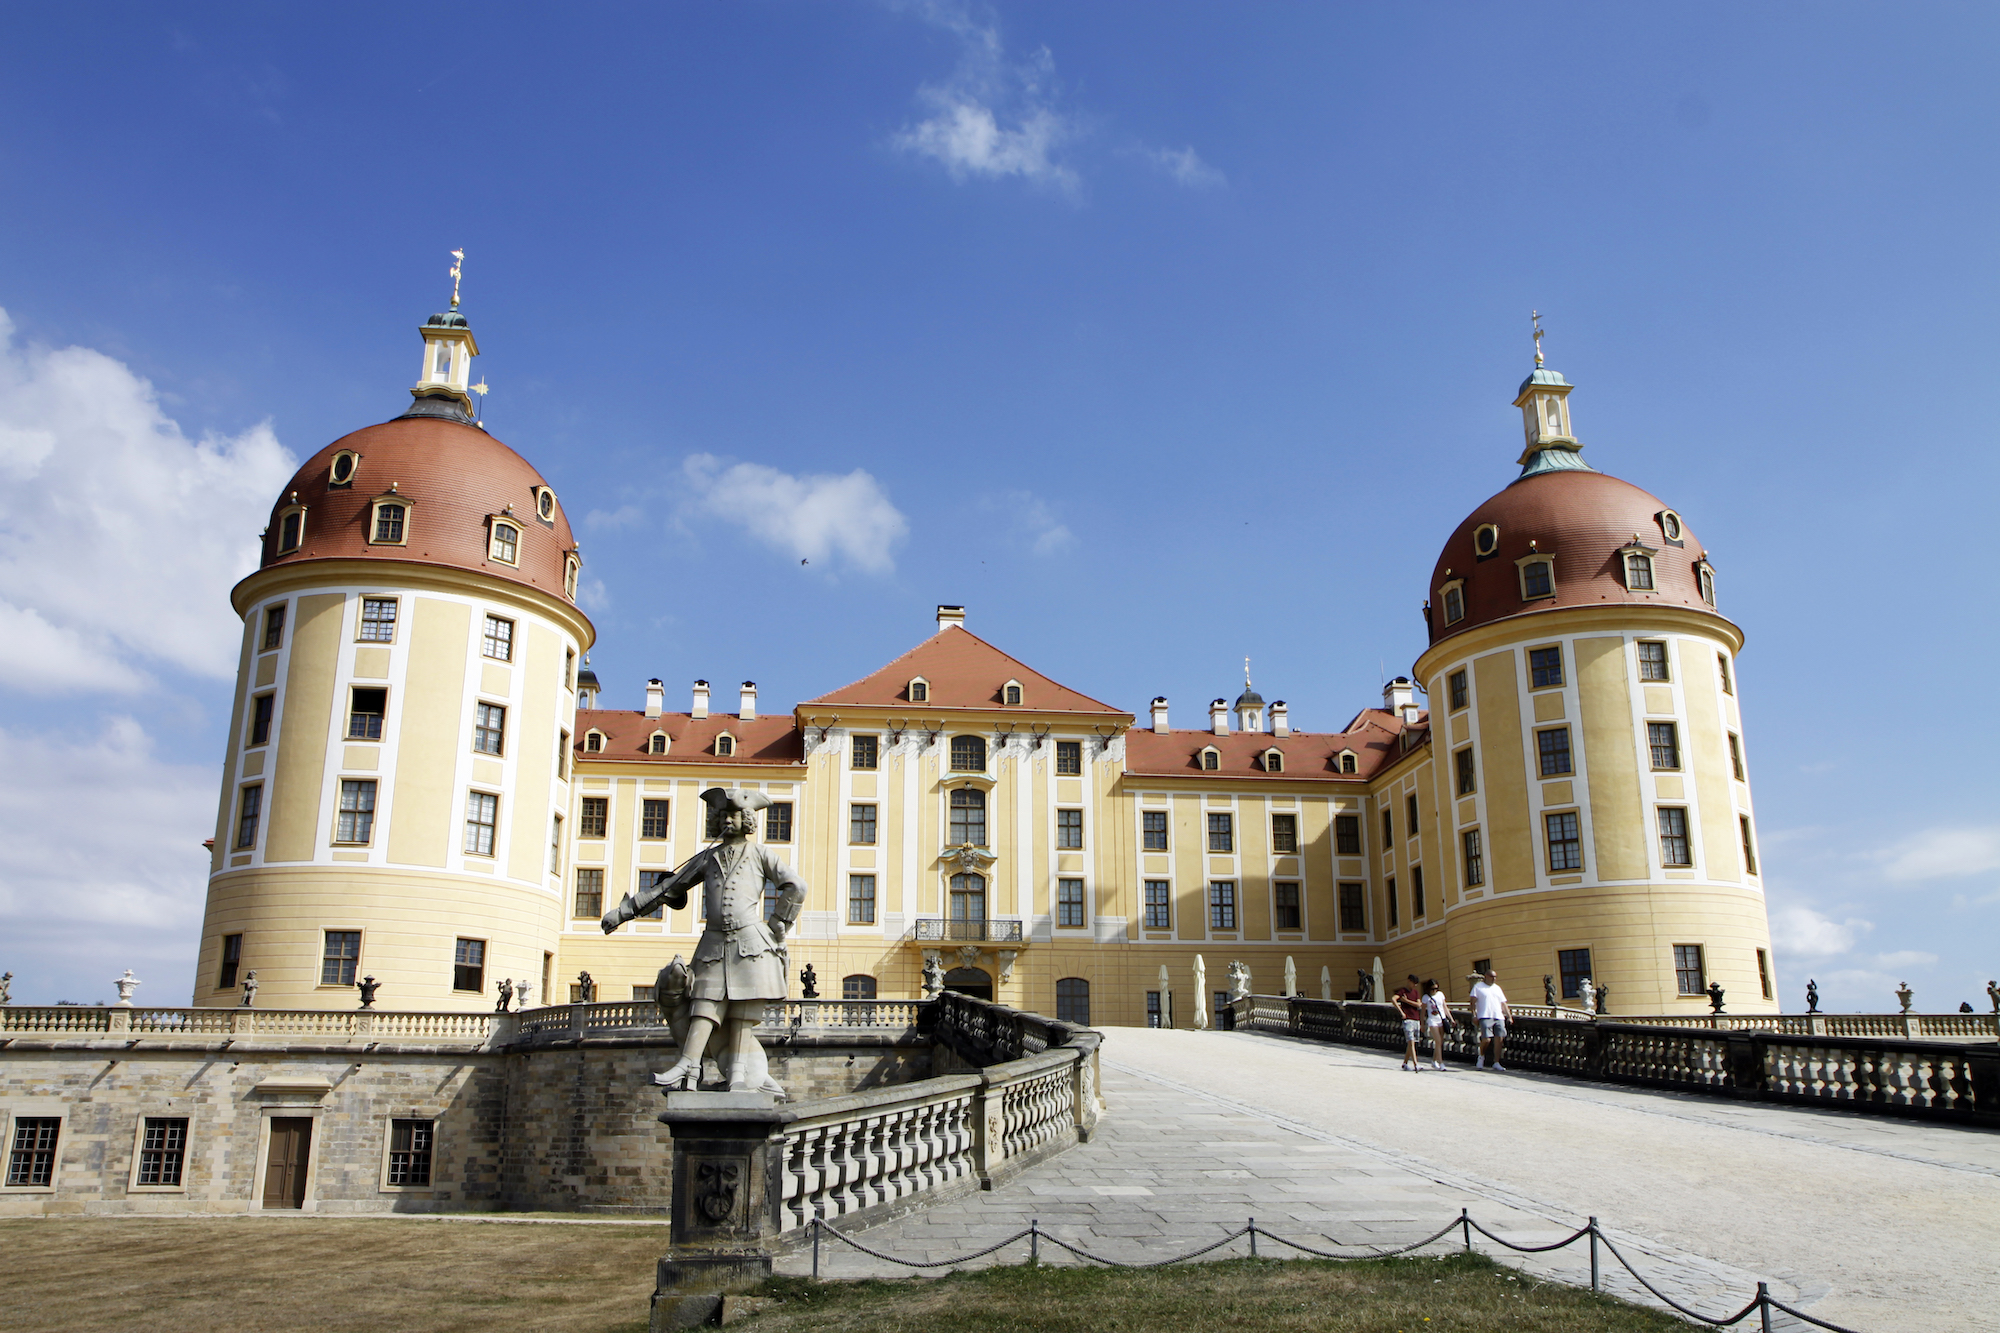 Schloss Moritzburg.